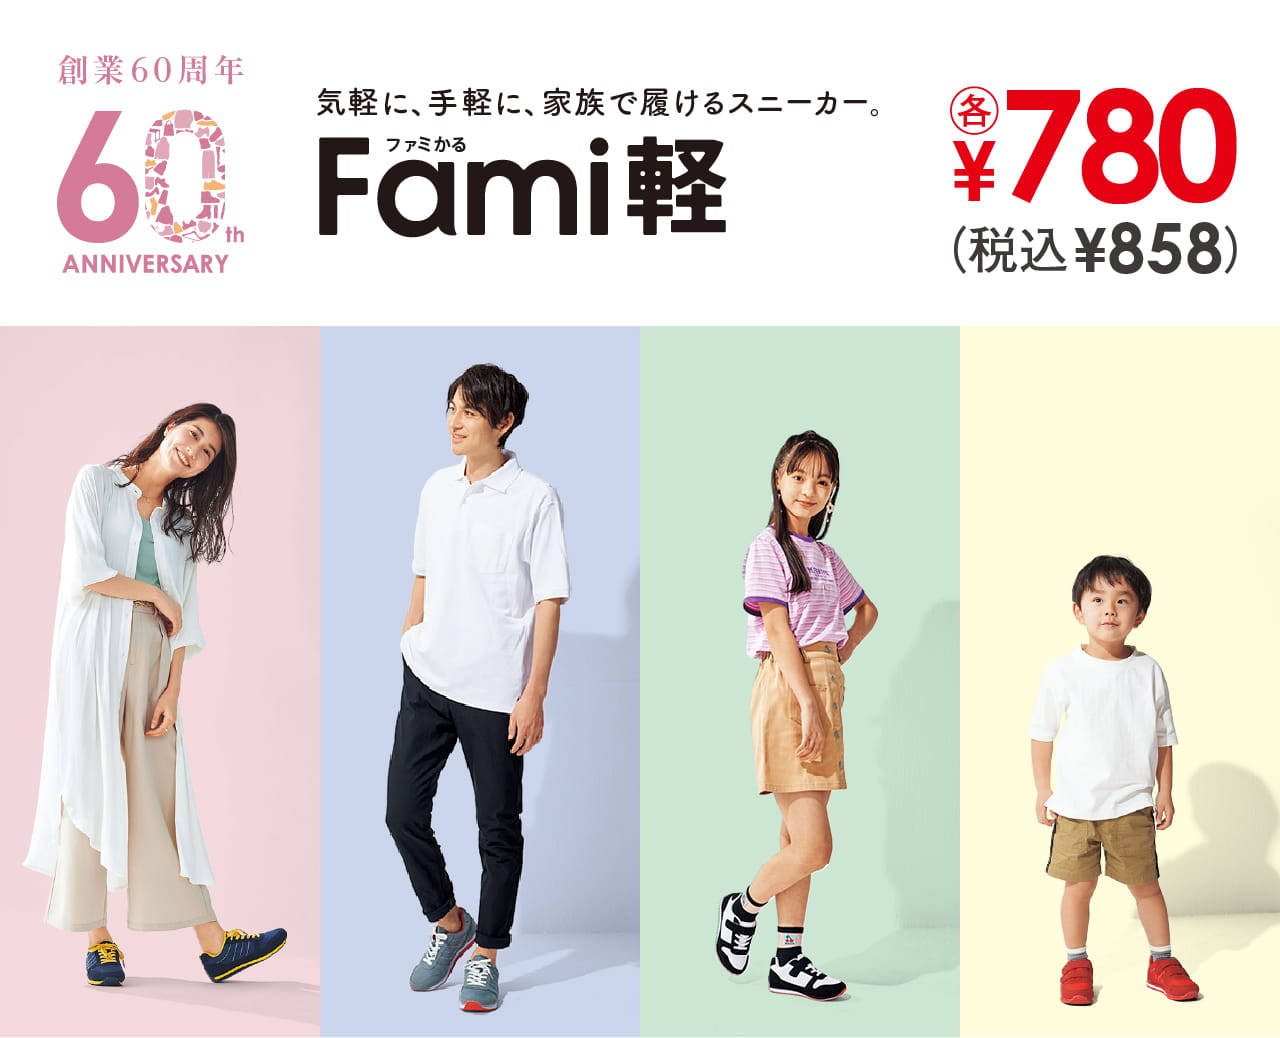 気軽に、手軽に、家族で履けるスニーカー。Fami軽(ファミかる)